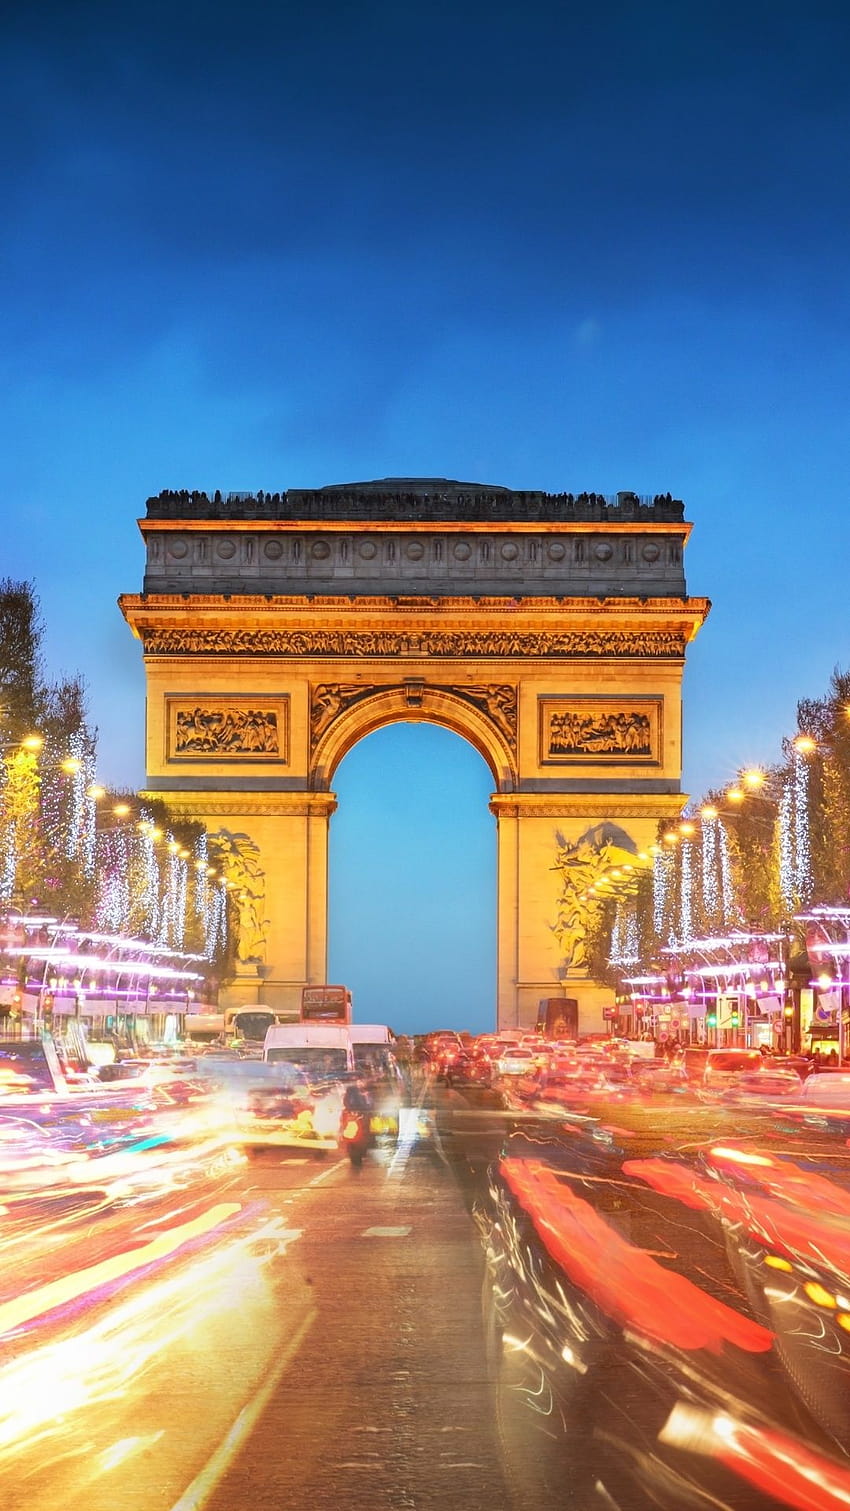 Best 5 Arc De Triomphe on Hip, arc de triomphe paris HD phone wallpaper